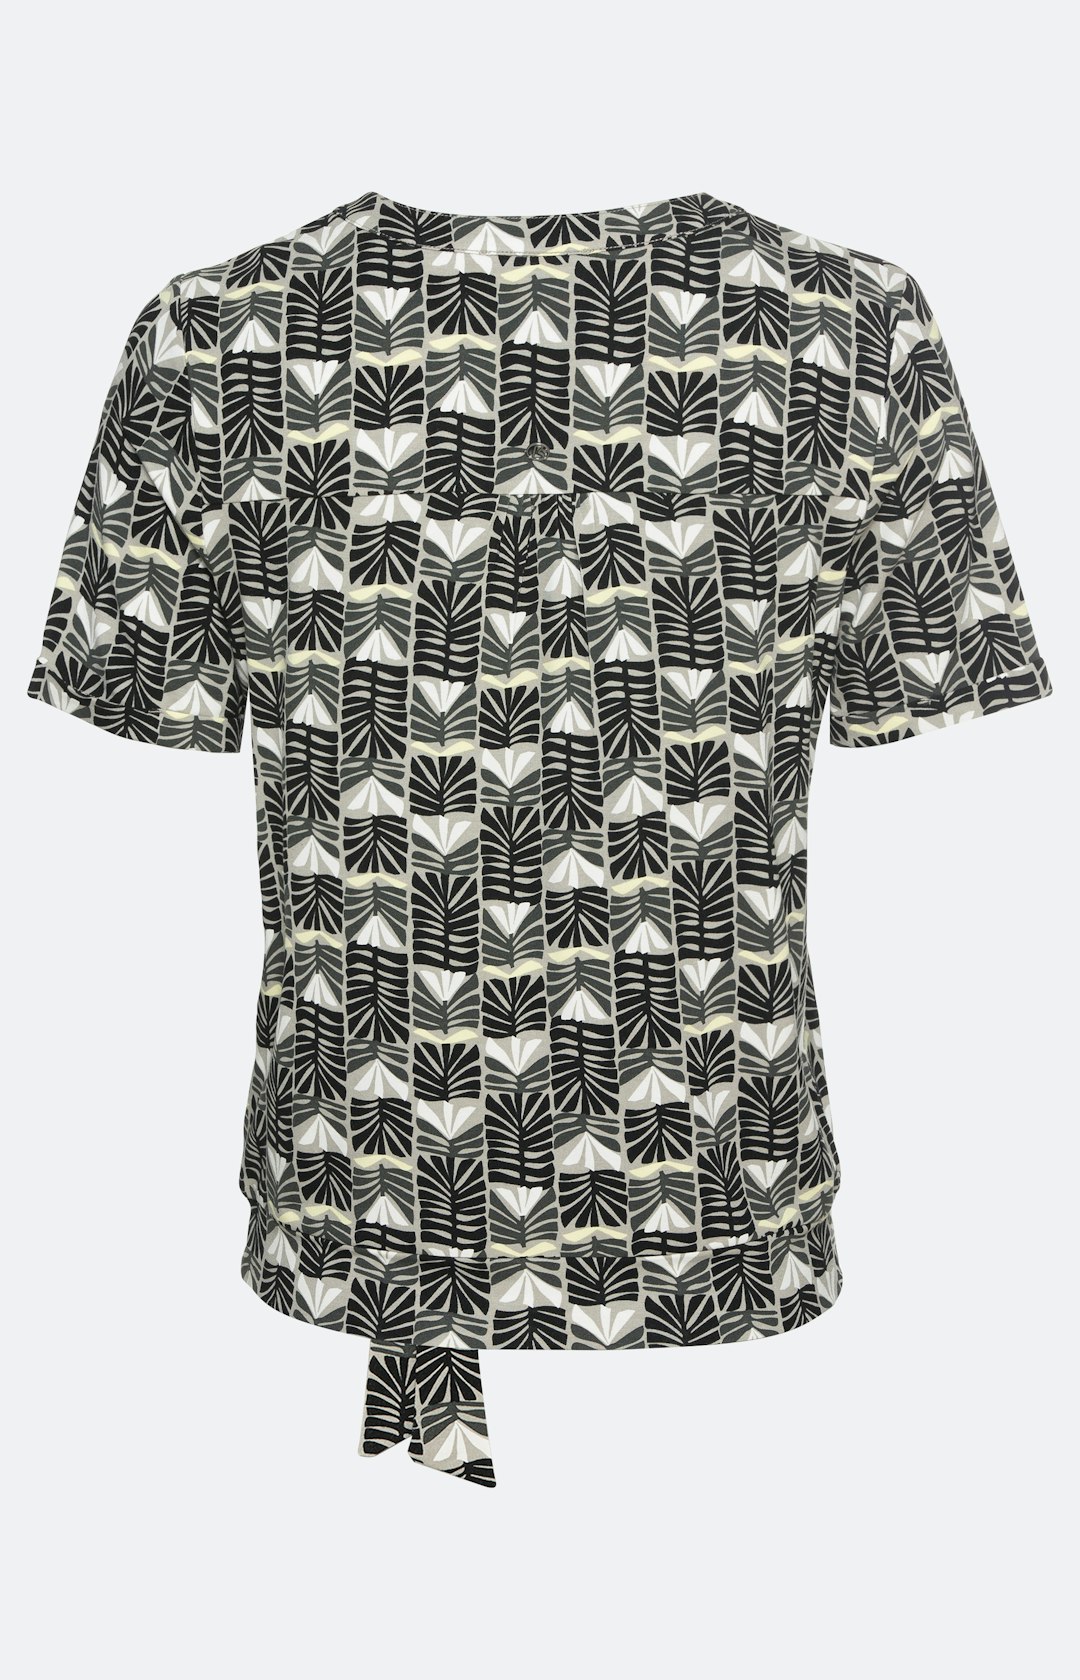 Gemustertes T-Shirt mit Knotendetail